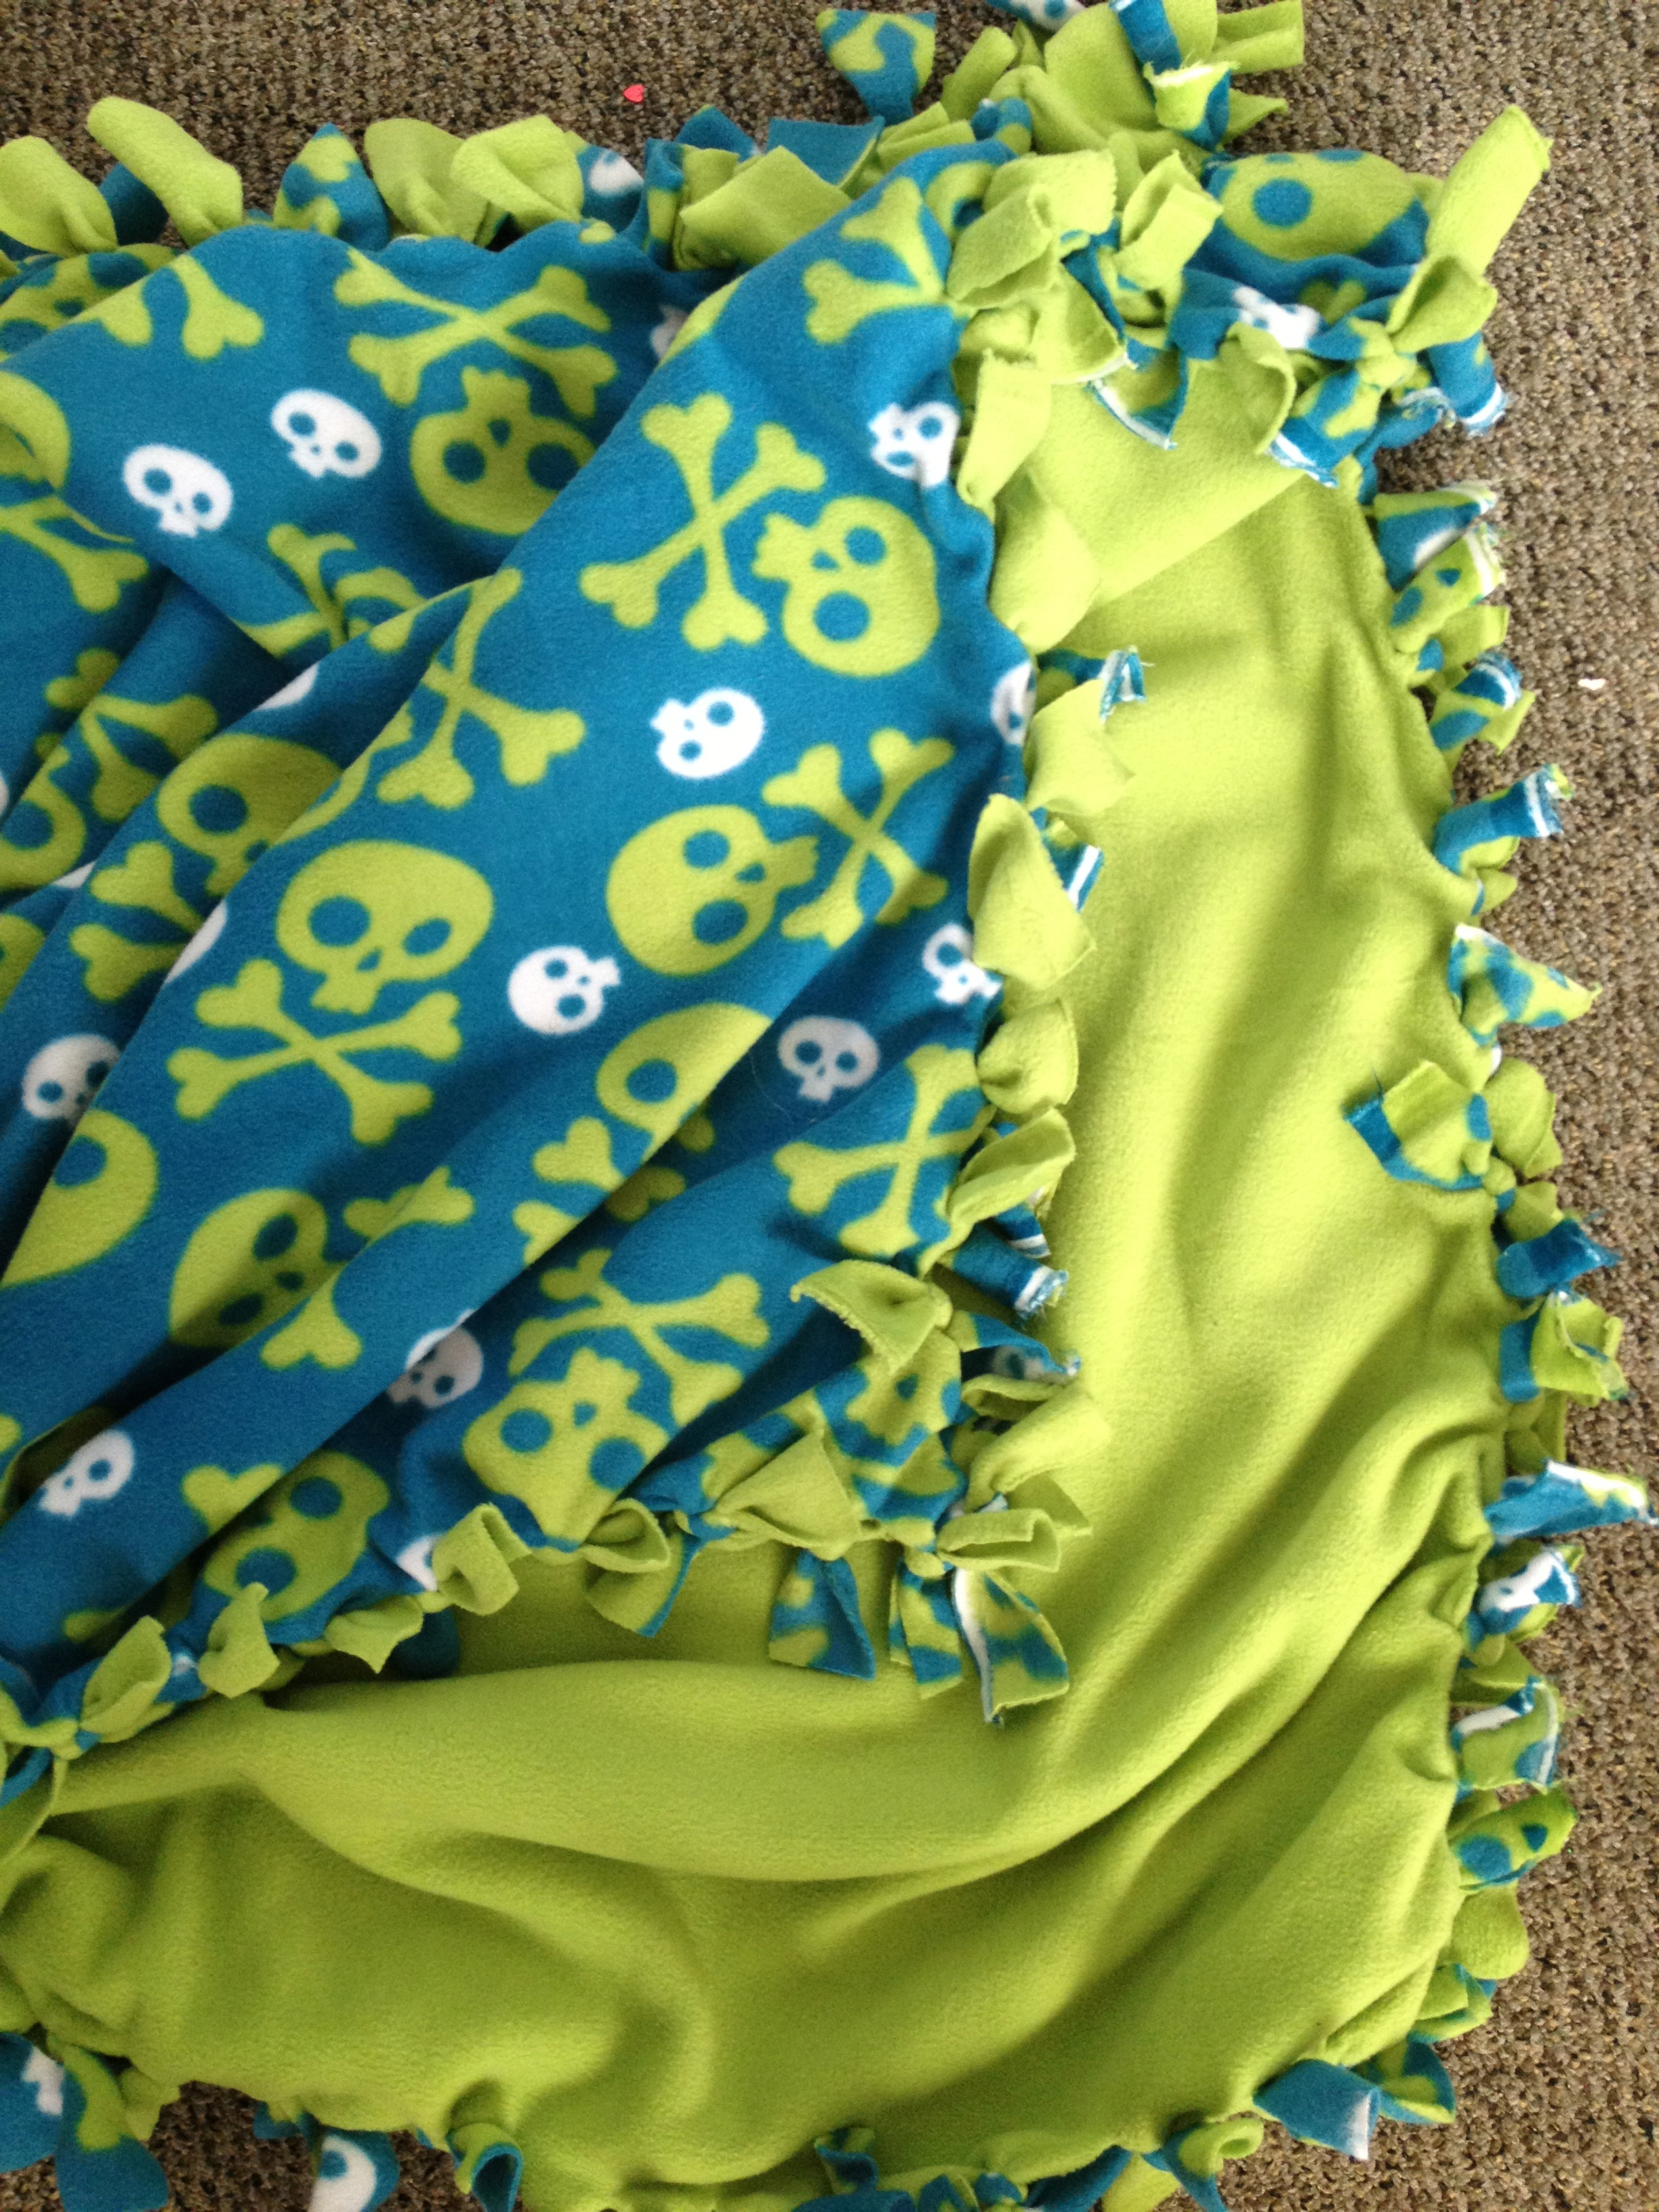 Best ideas about Fleece Blankets DIY
. Save or Pin DIY Fleece Tie Blanket Now.